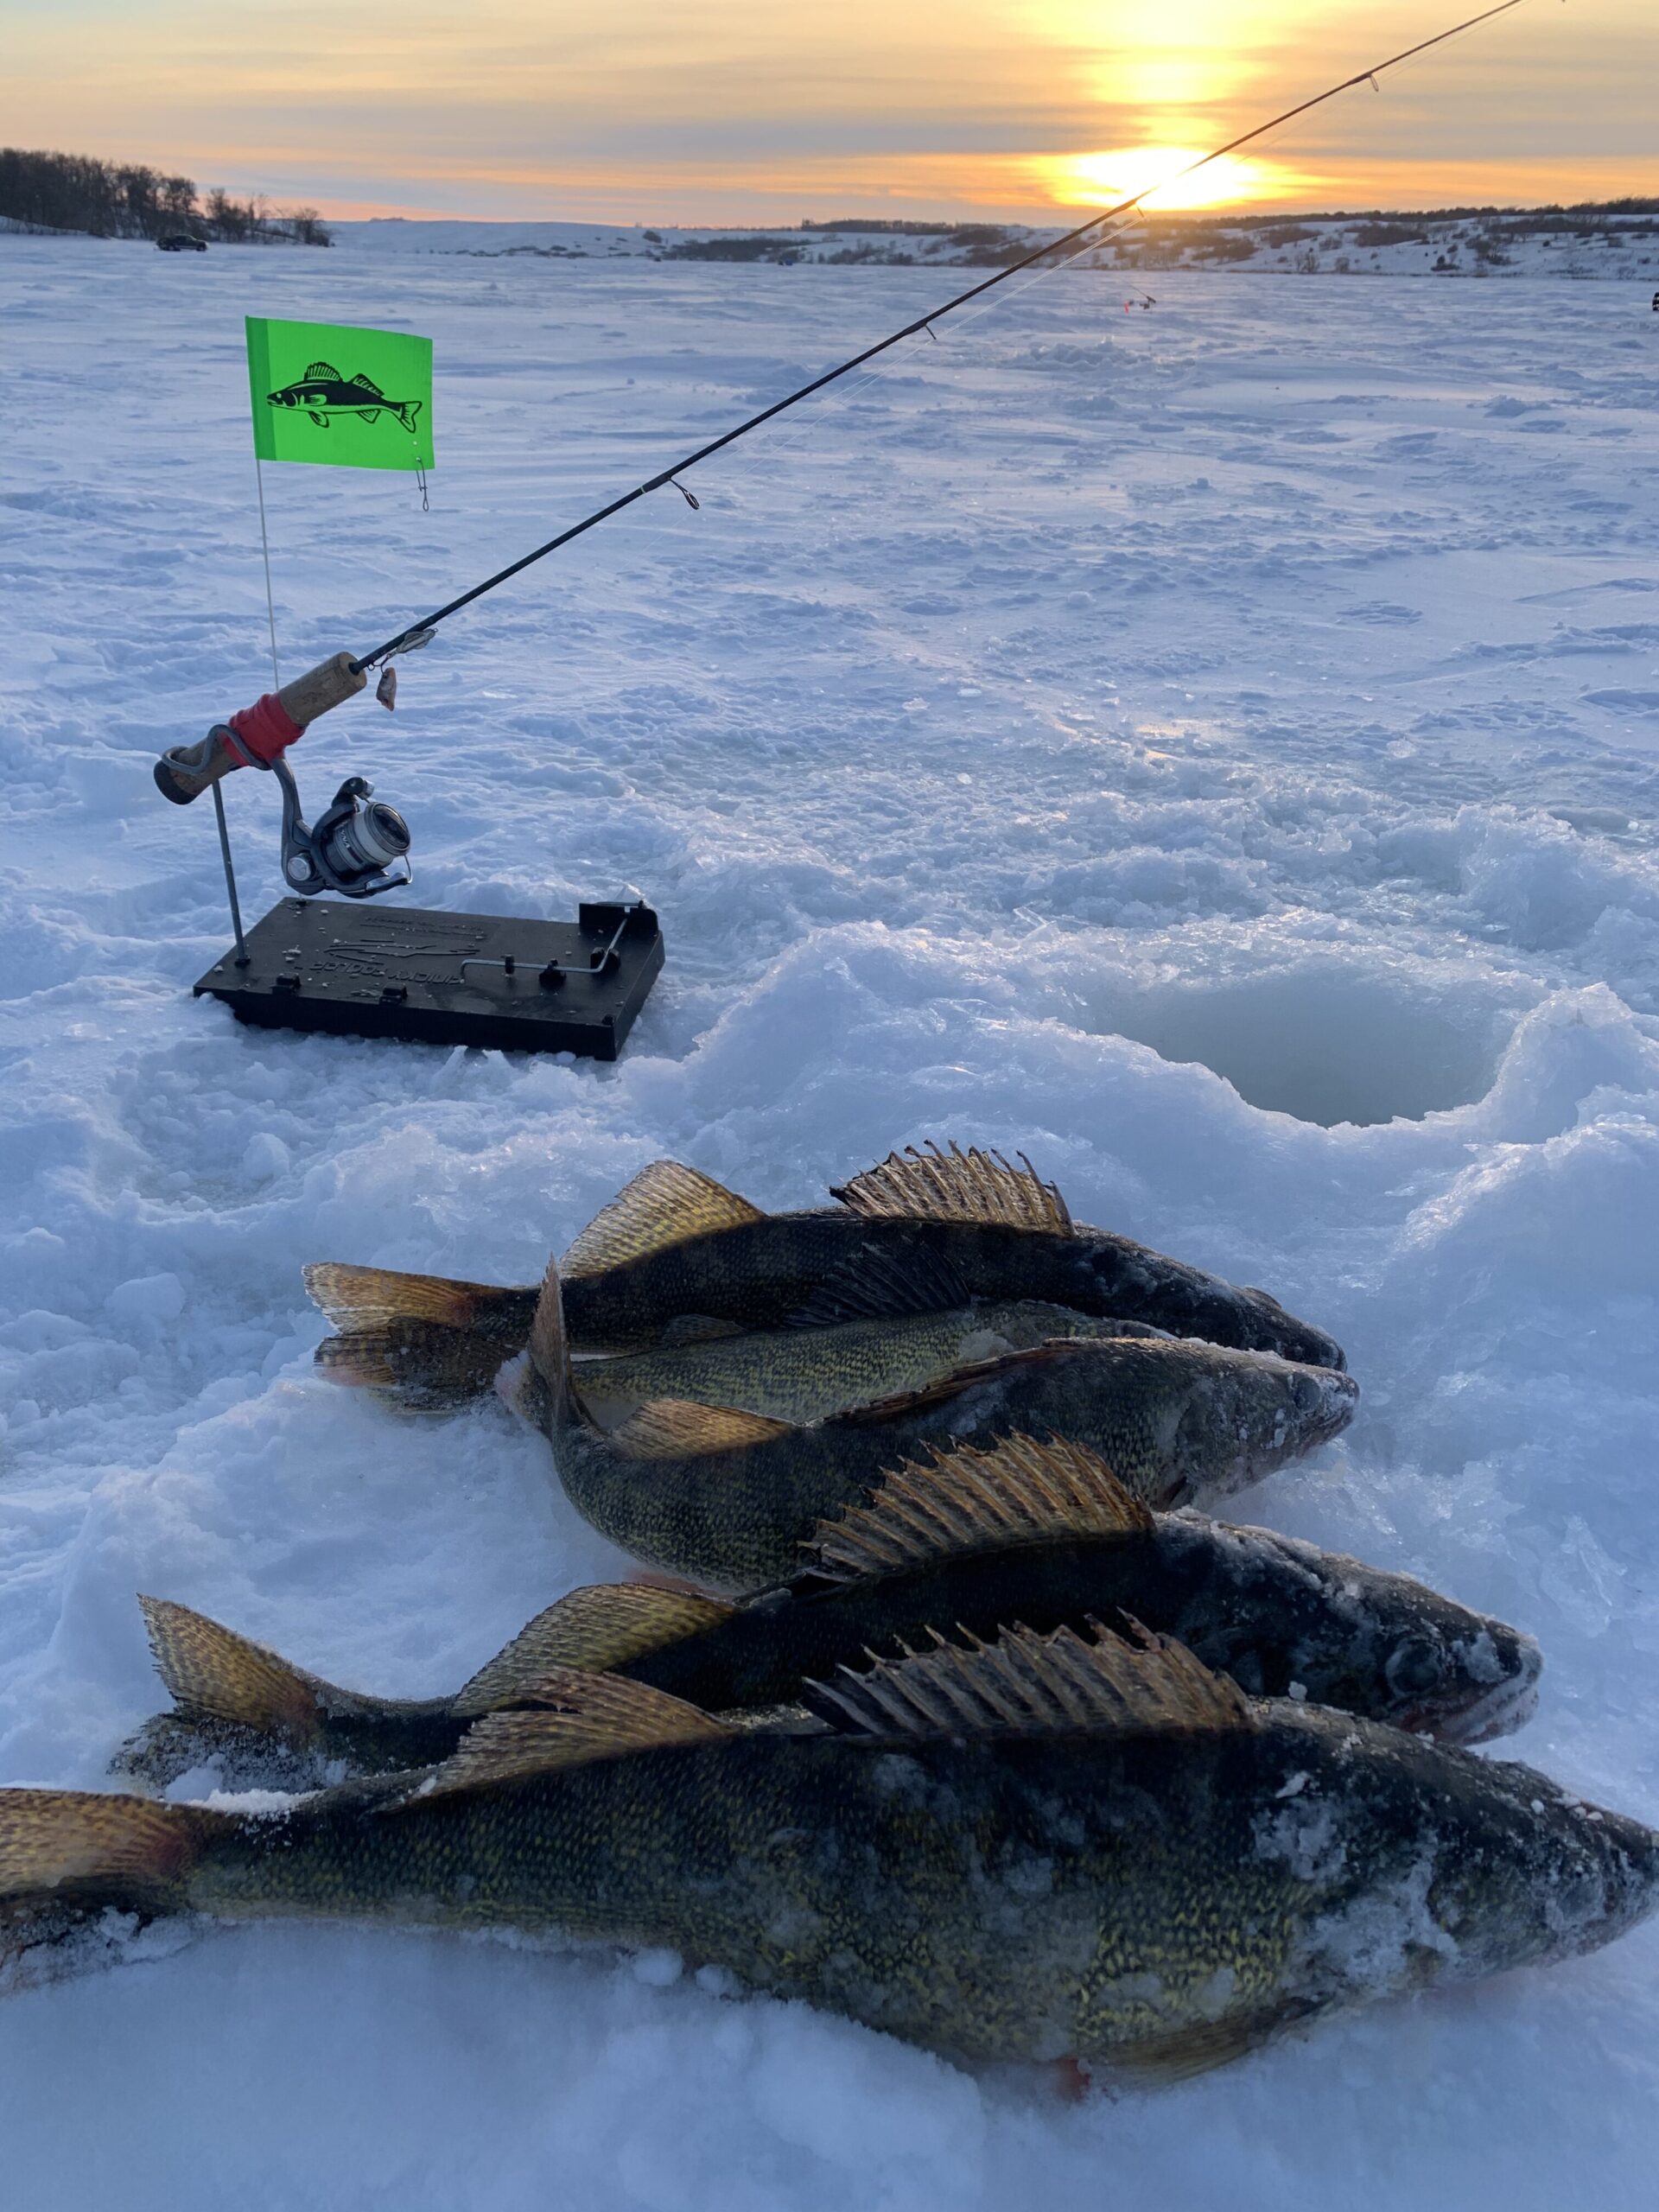 Finicky Fooler vs. I Fish Pro 2.0? - Ice Fishing Forum - Ice Fishing Forum